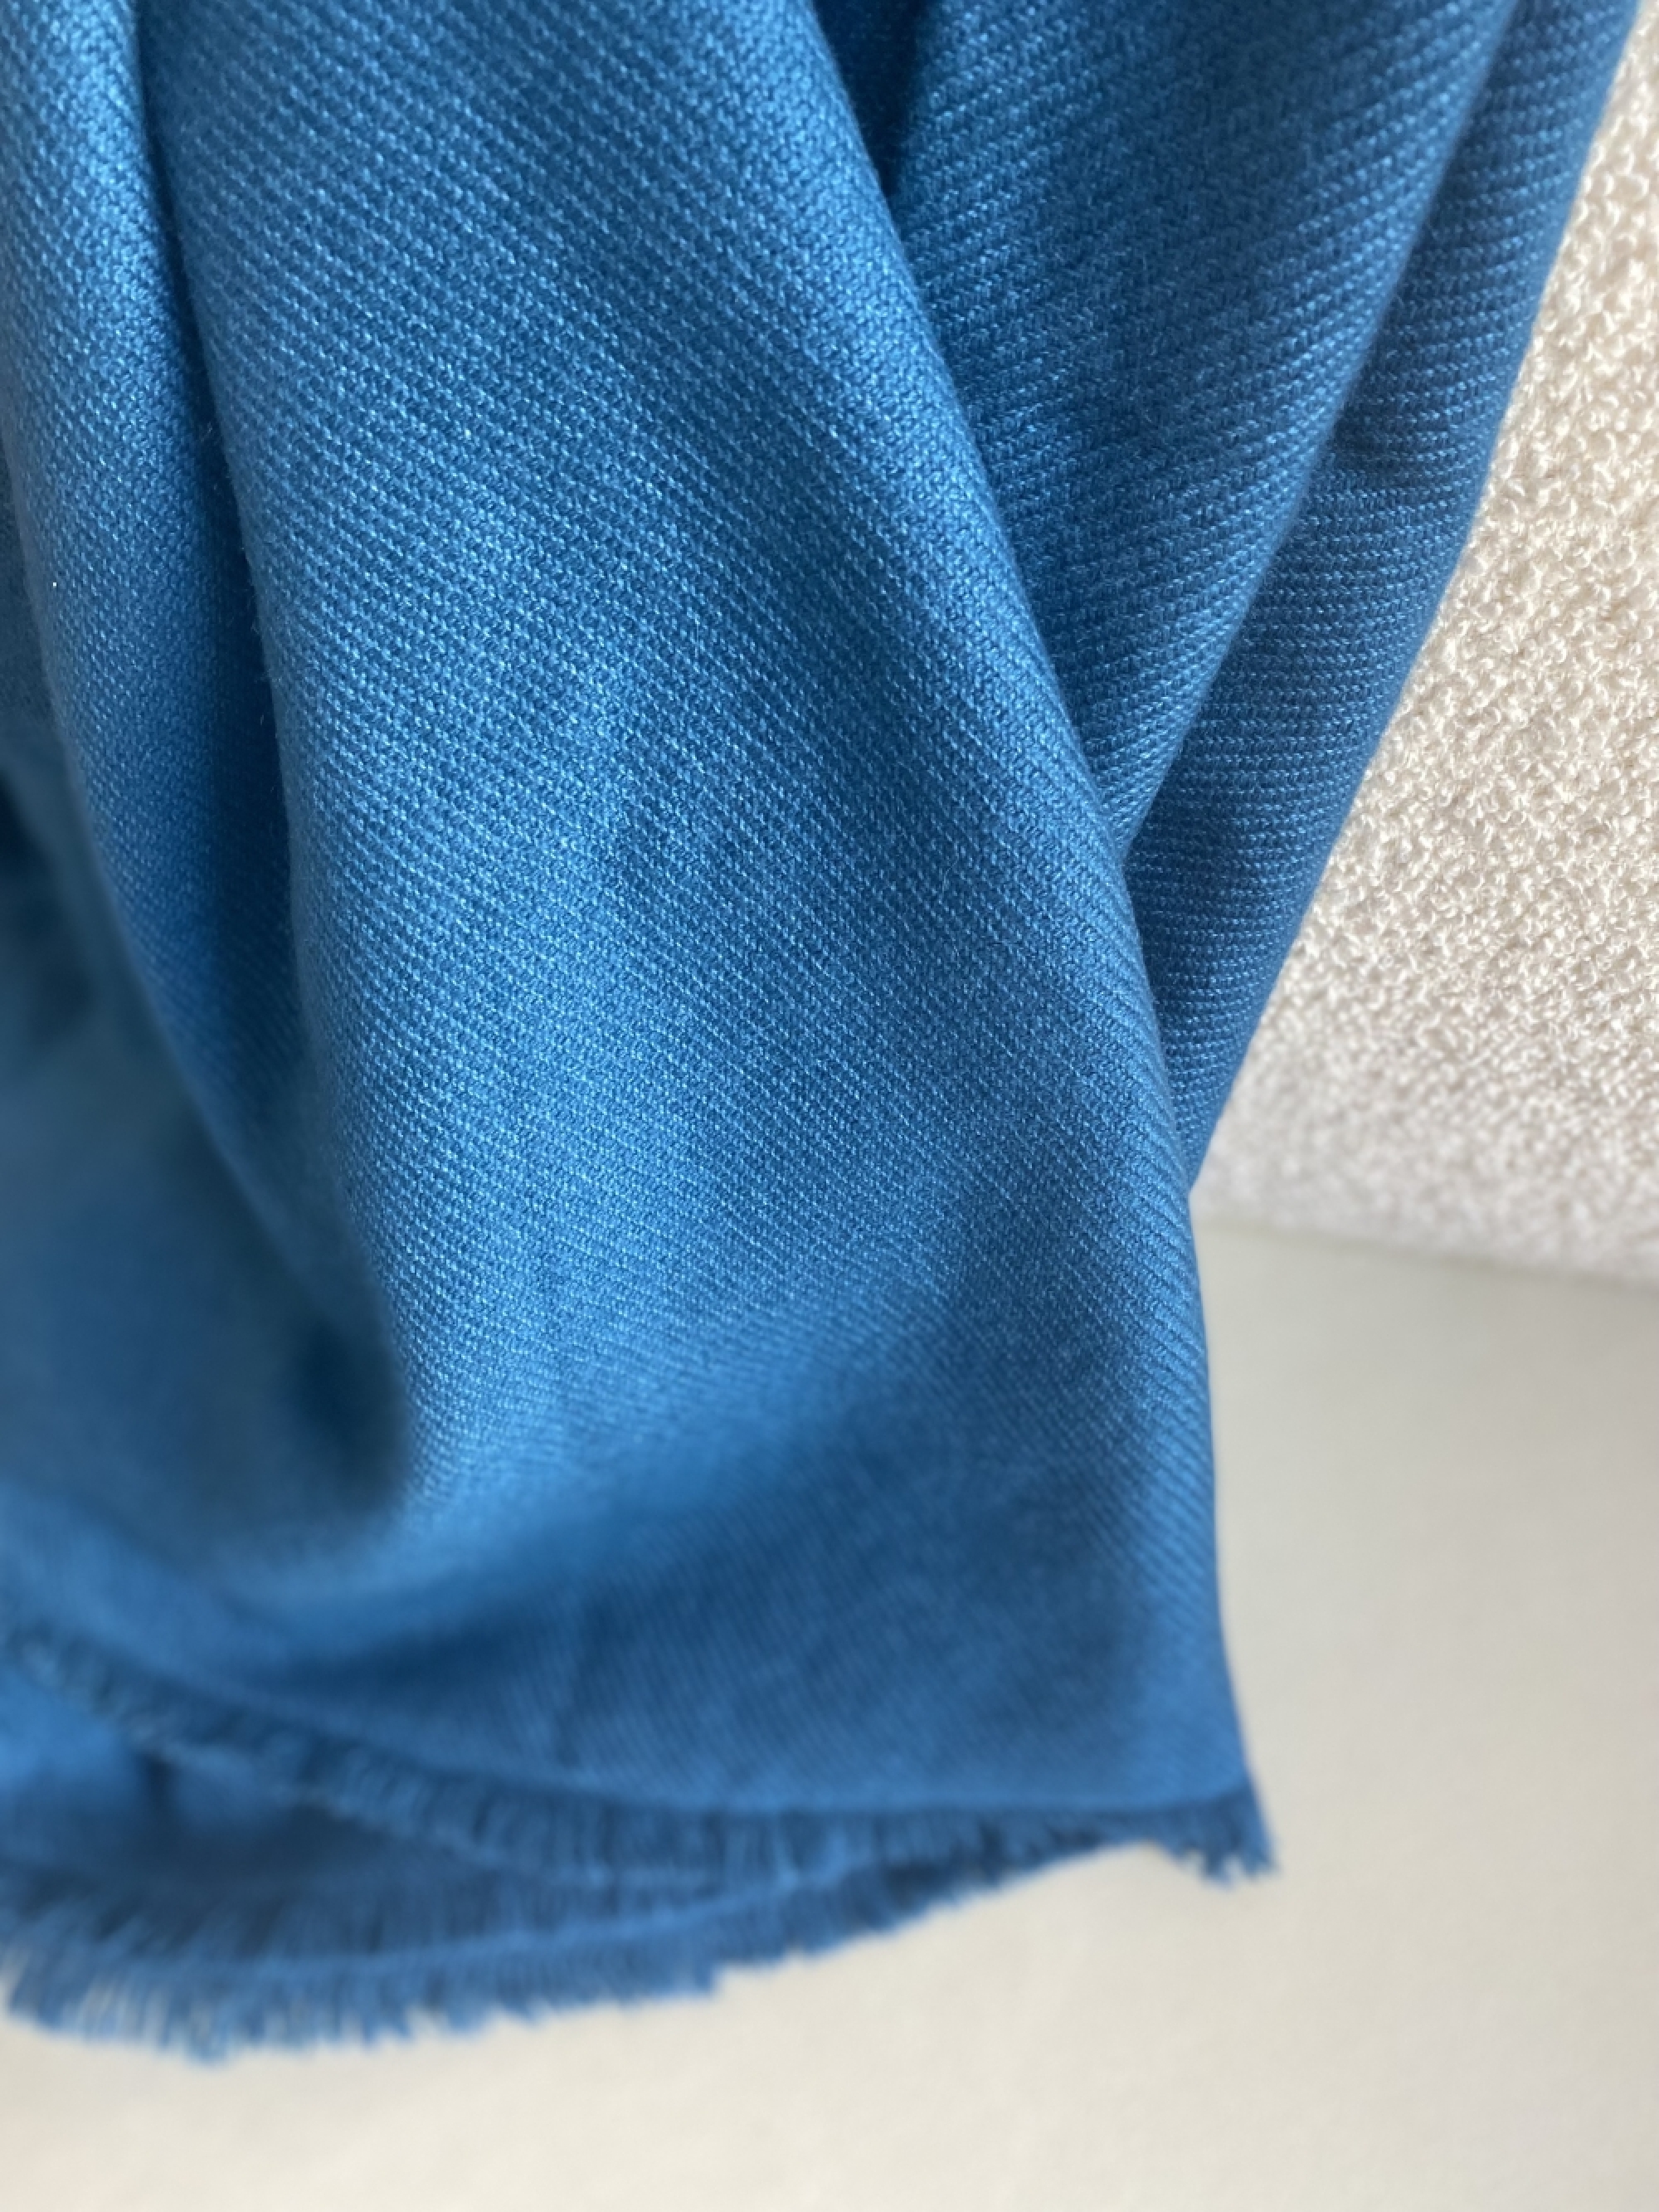 Cashmere accessoires neu toodoo plain l 220 x 220 leuchtendes blau 220x220cm